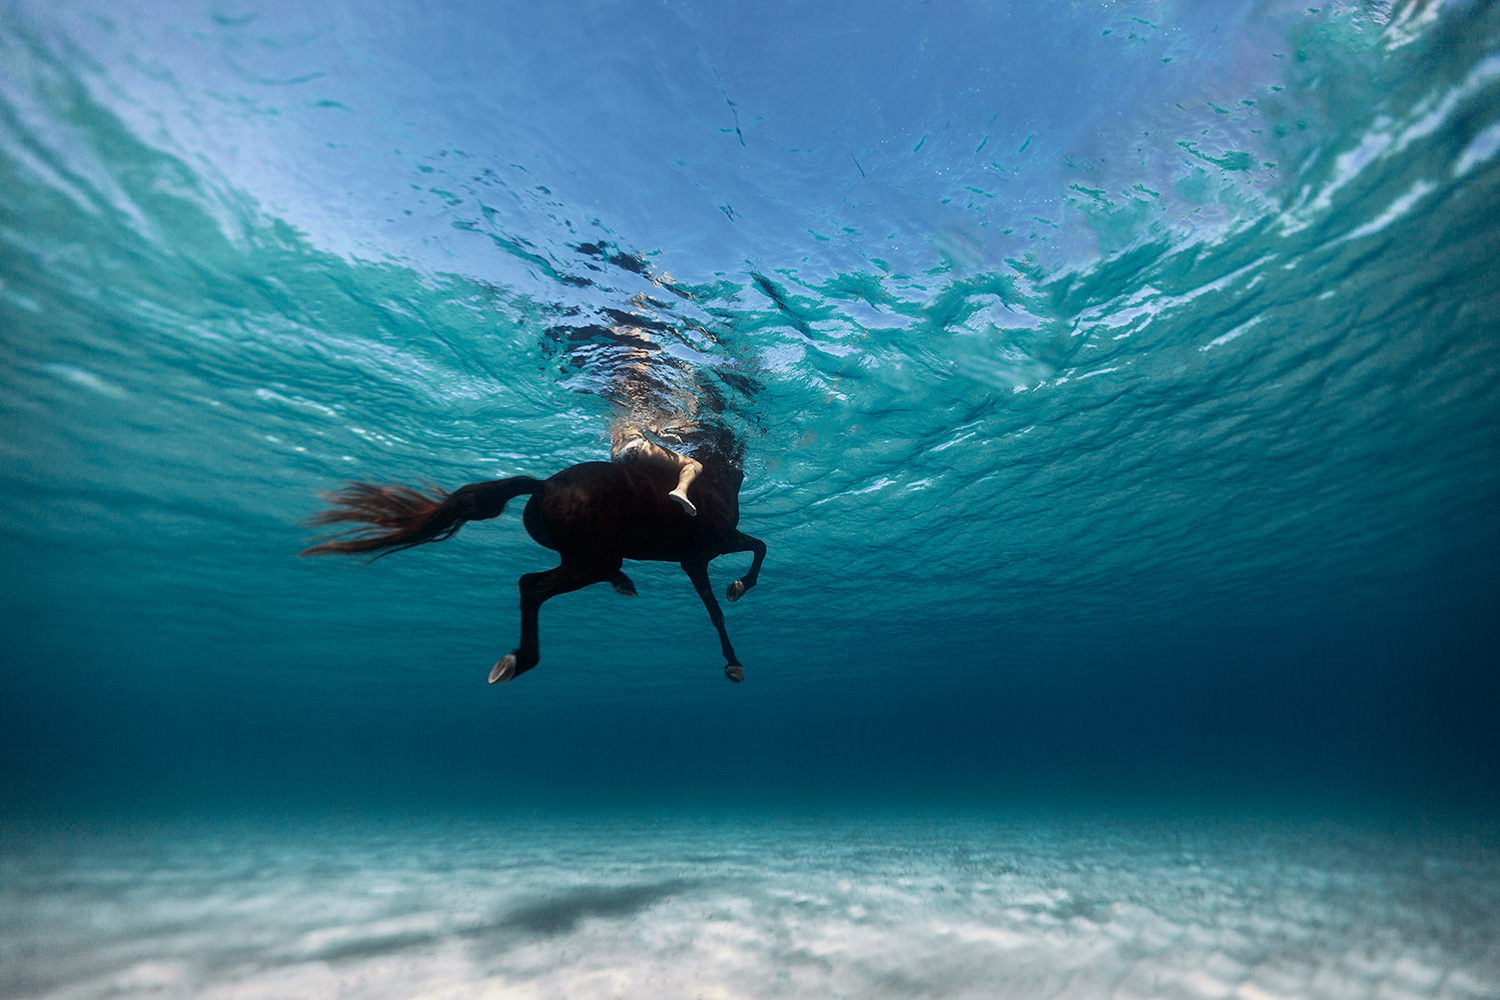 Красота девушек и величие моря на фотографиях Энрика Эдриана Дженера